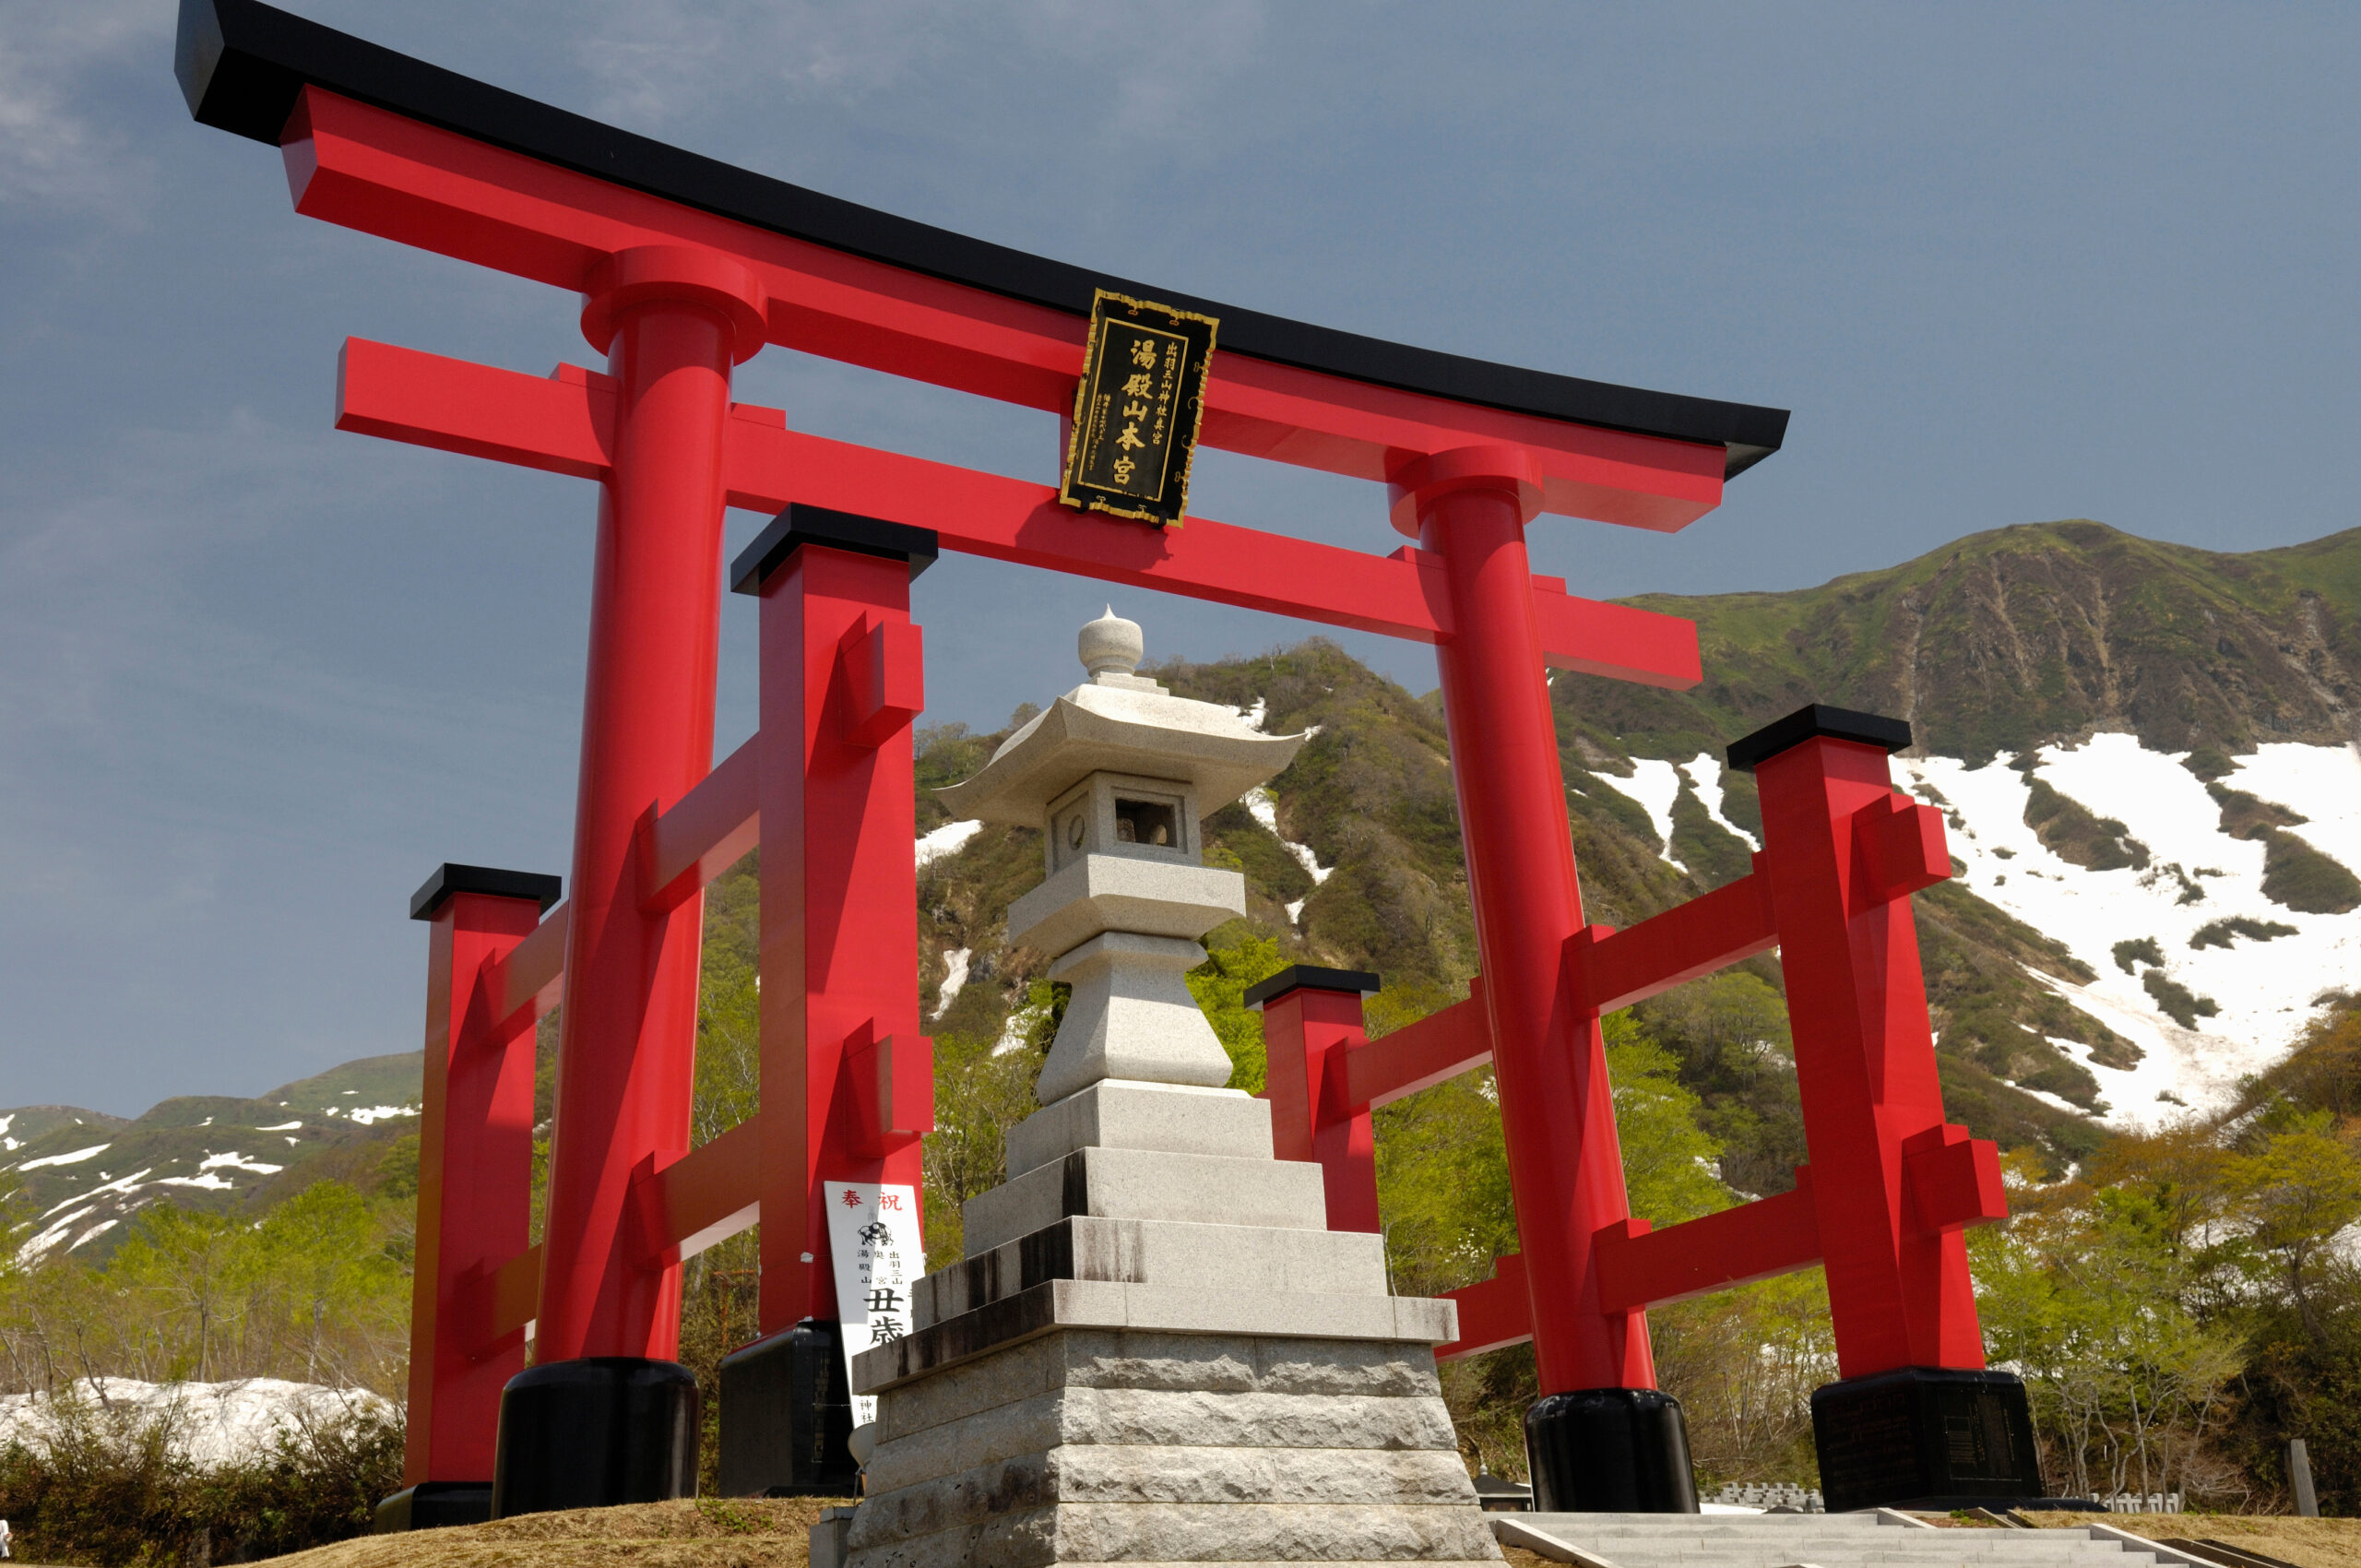 湯殿山神社本宮は、写真撮影禁止、参拝は土足厳禁という厳しい戒めで知られる神社。